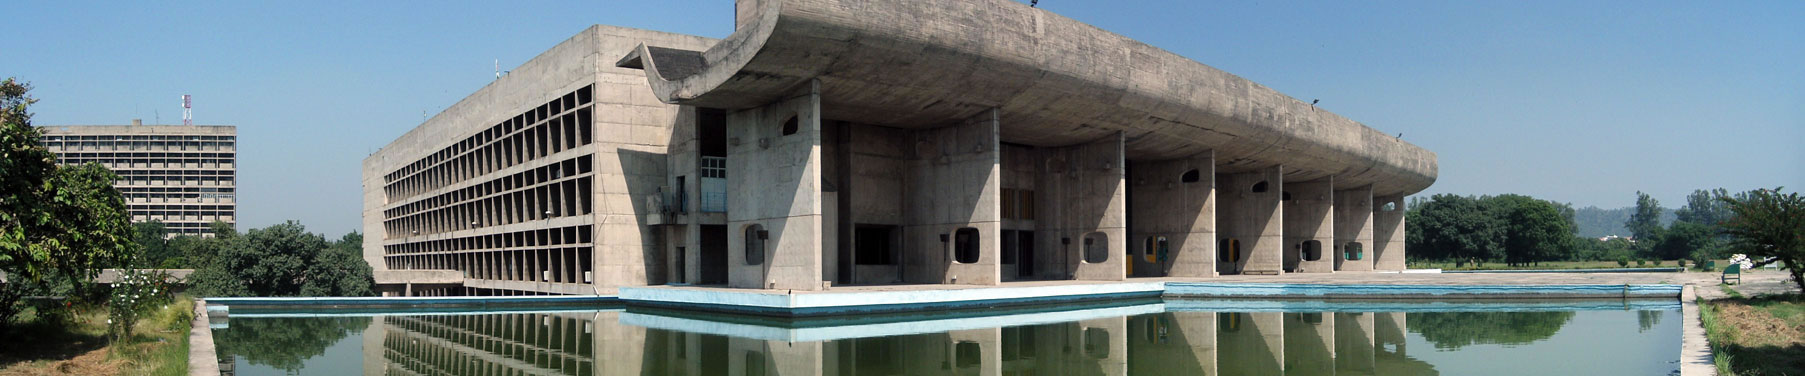 Chandigarh: il progetto capolavoro di Le Corbusier